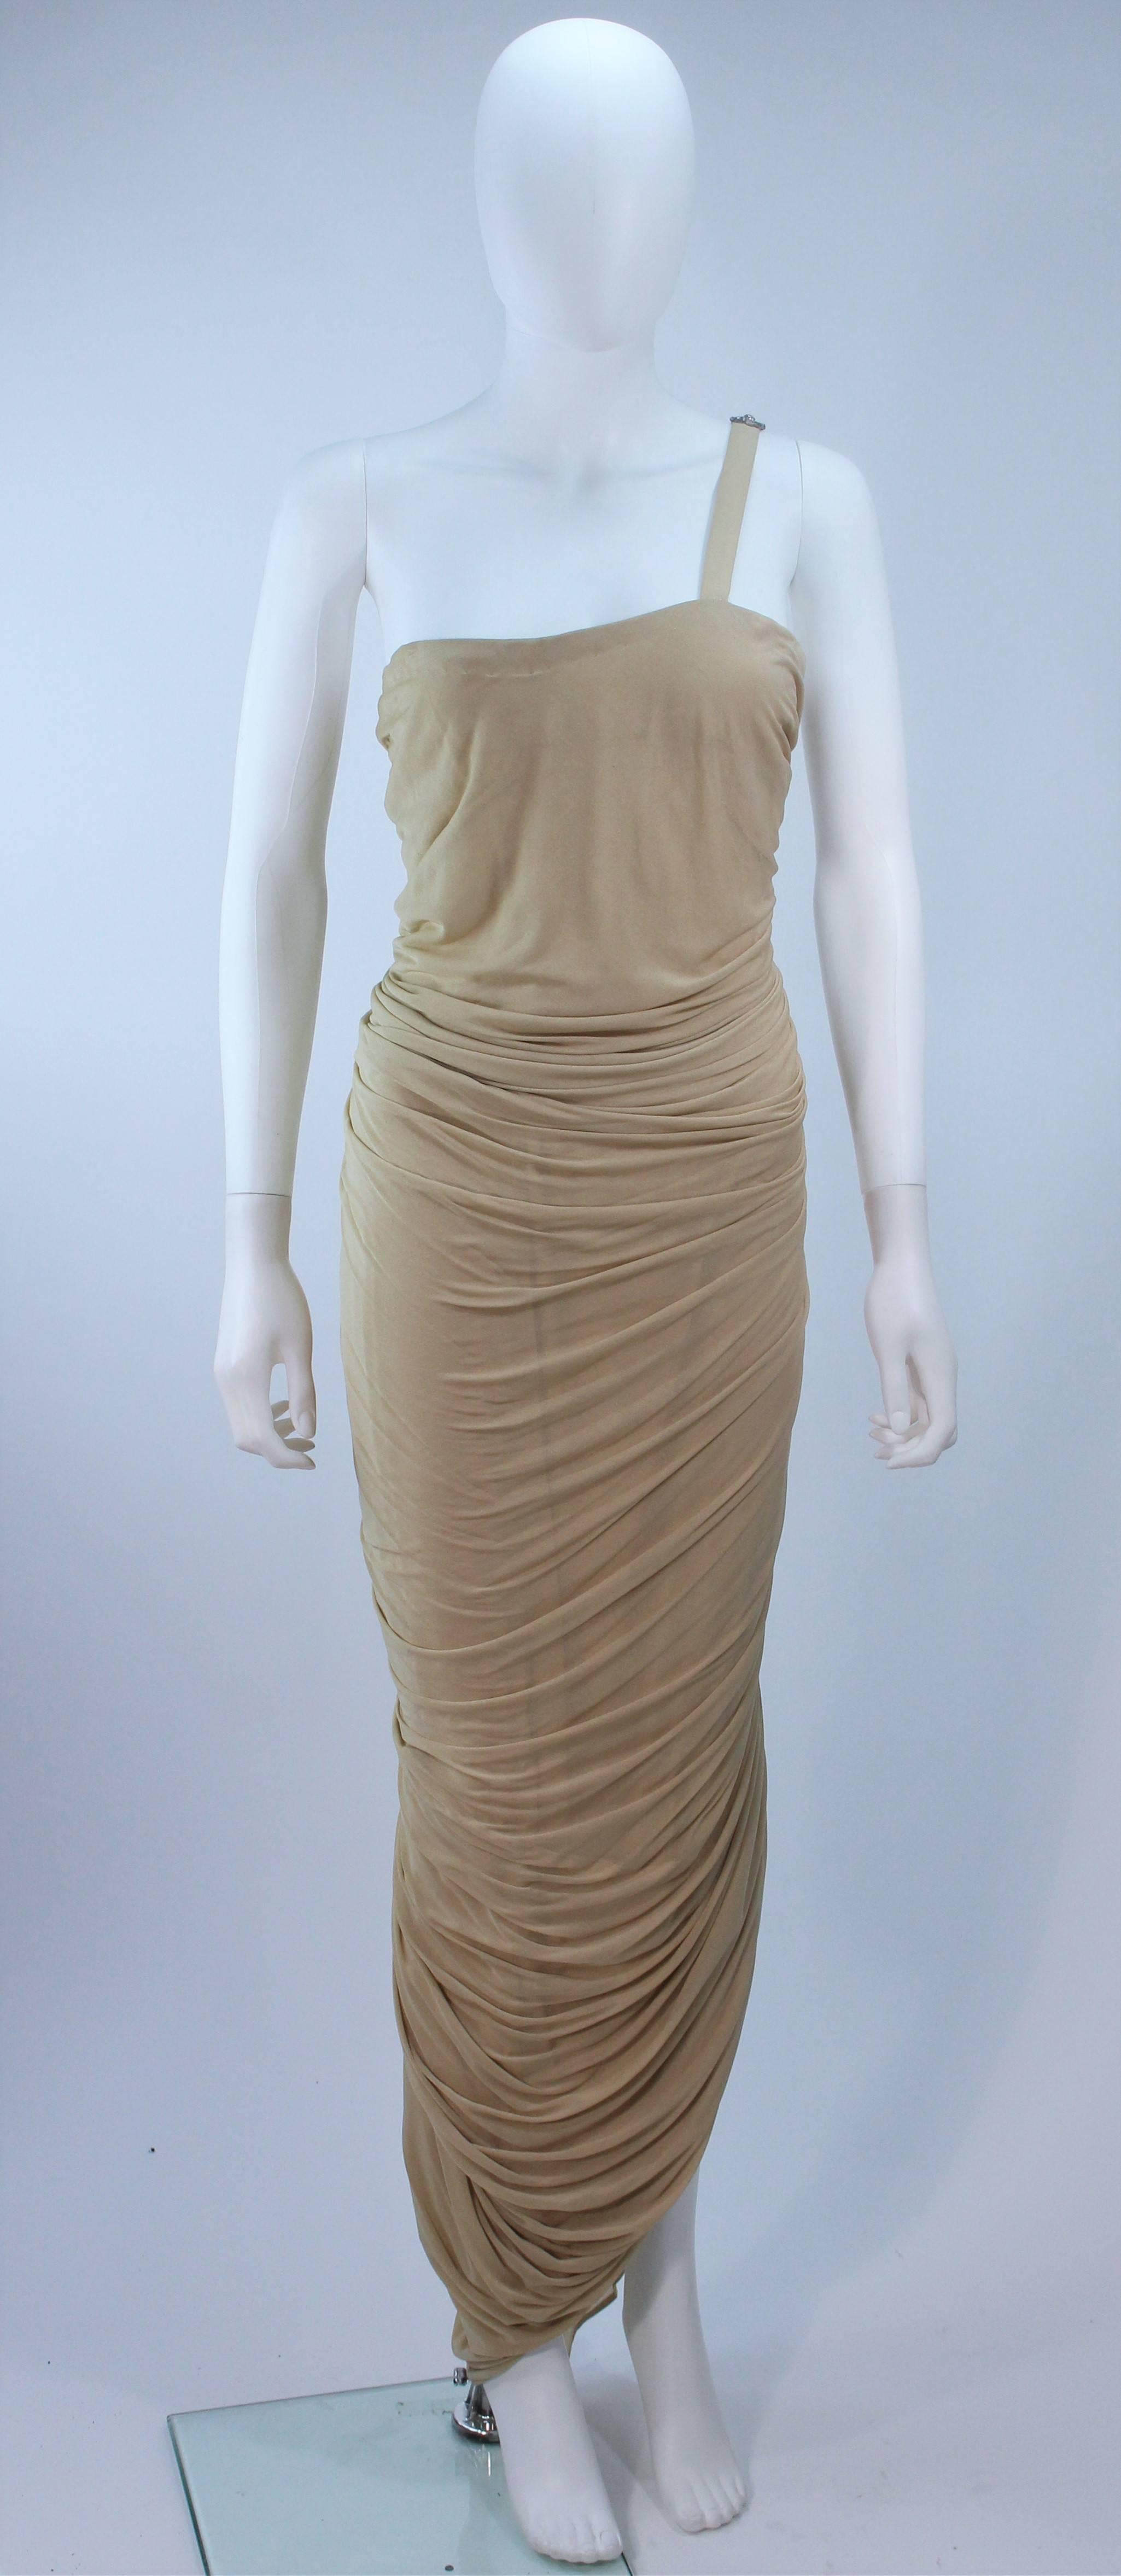 Cette robe Elizabeth Mason Couture  se caractérise par un design stylisé en jersey froncé avec des bretelles en strass. Fabriqué à Hille. 

 La robe peut être confectionnée dans une variété de couleurs. 

Il s'agit d'une commande sur mesure.